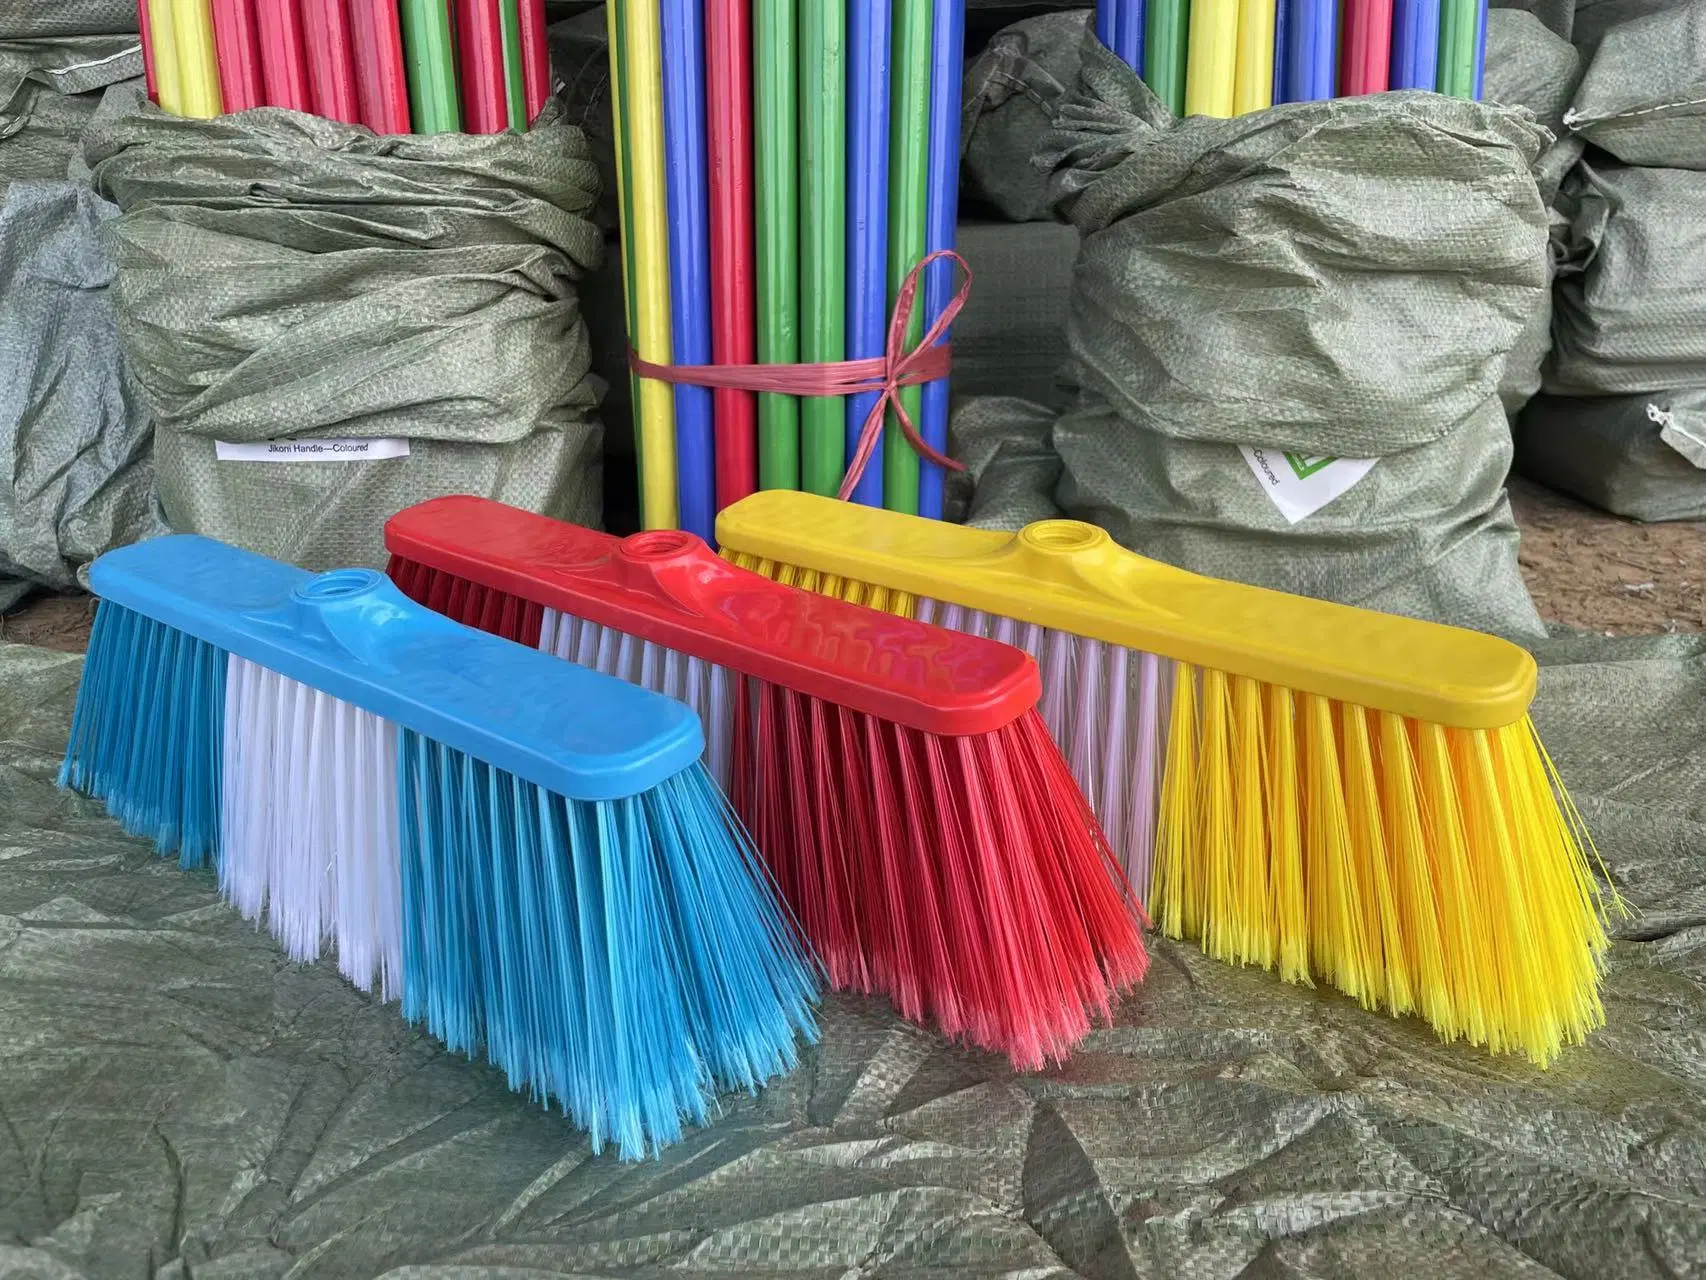 Plastic Broom Floor Cleaner Sweeper Vacuum Cleaner Broom with Wooden Handle Mop Stick